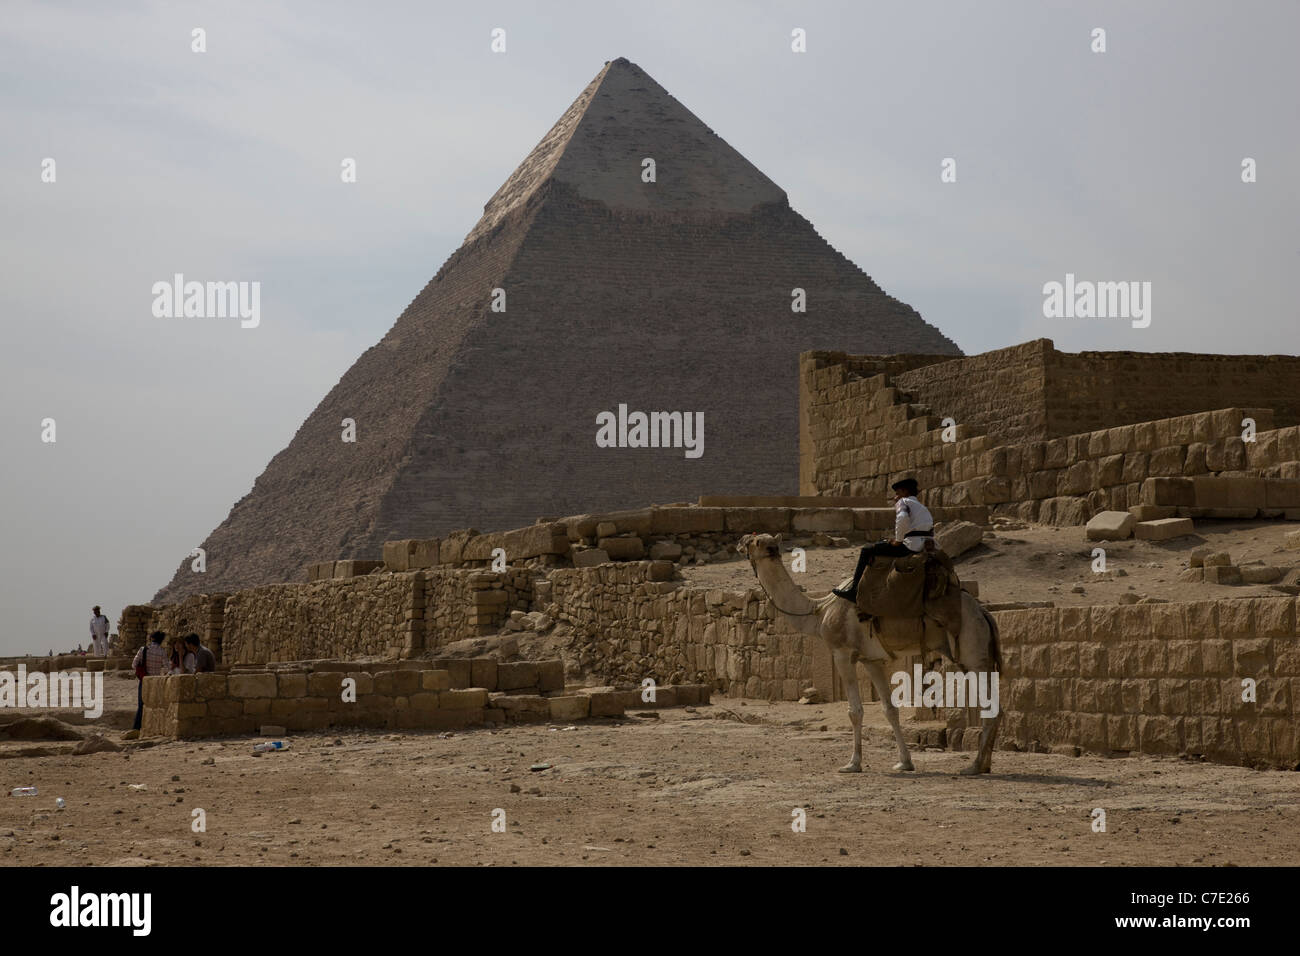 The Pyramids at Gisa Stock Photo